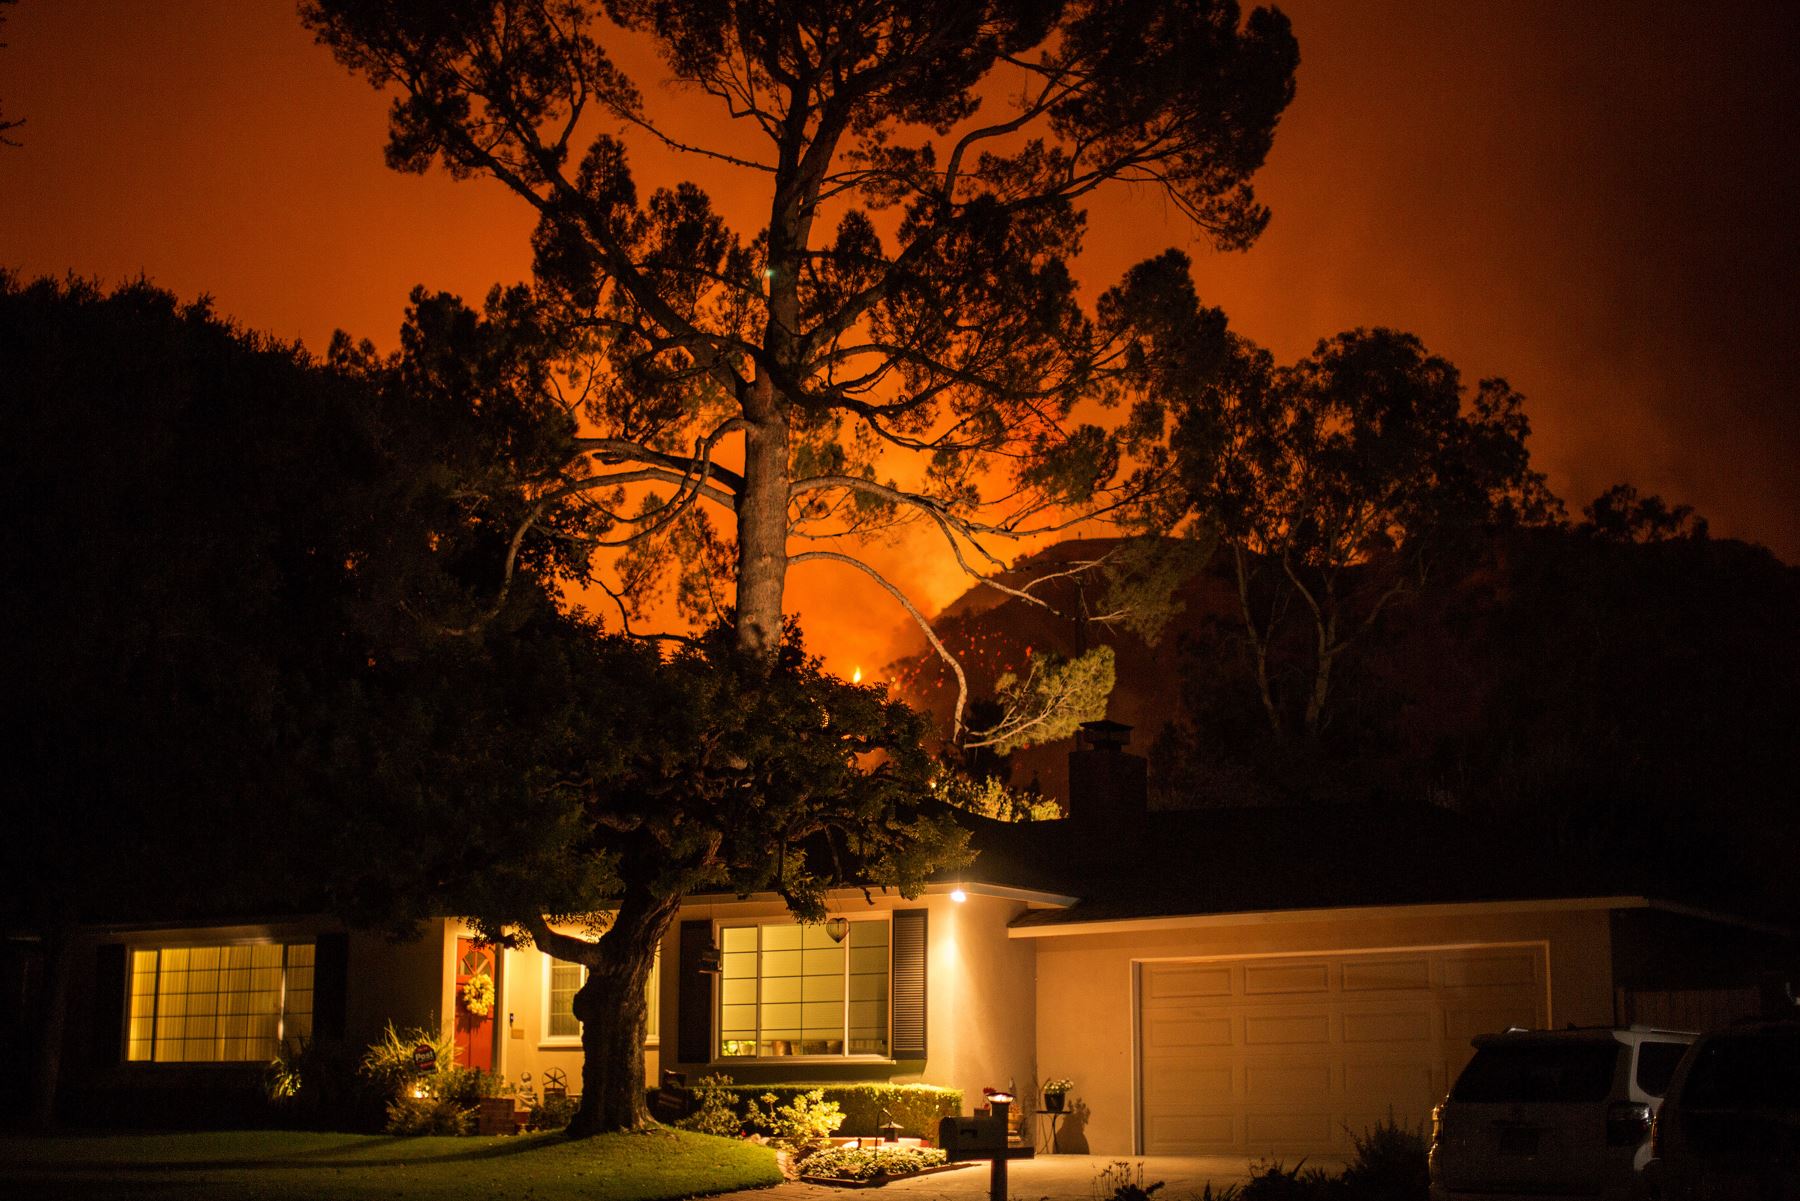 Un gran incendio que se ha estado produciendo en las afueras de Los Ángeles durante más de una semana que amenazó con devorar un observatorio histórico y torres de transmisión. Foto: AFP